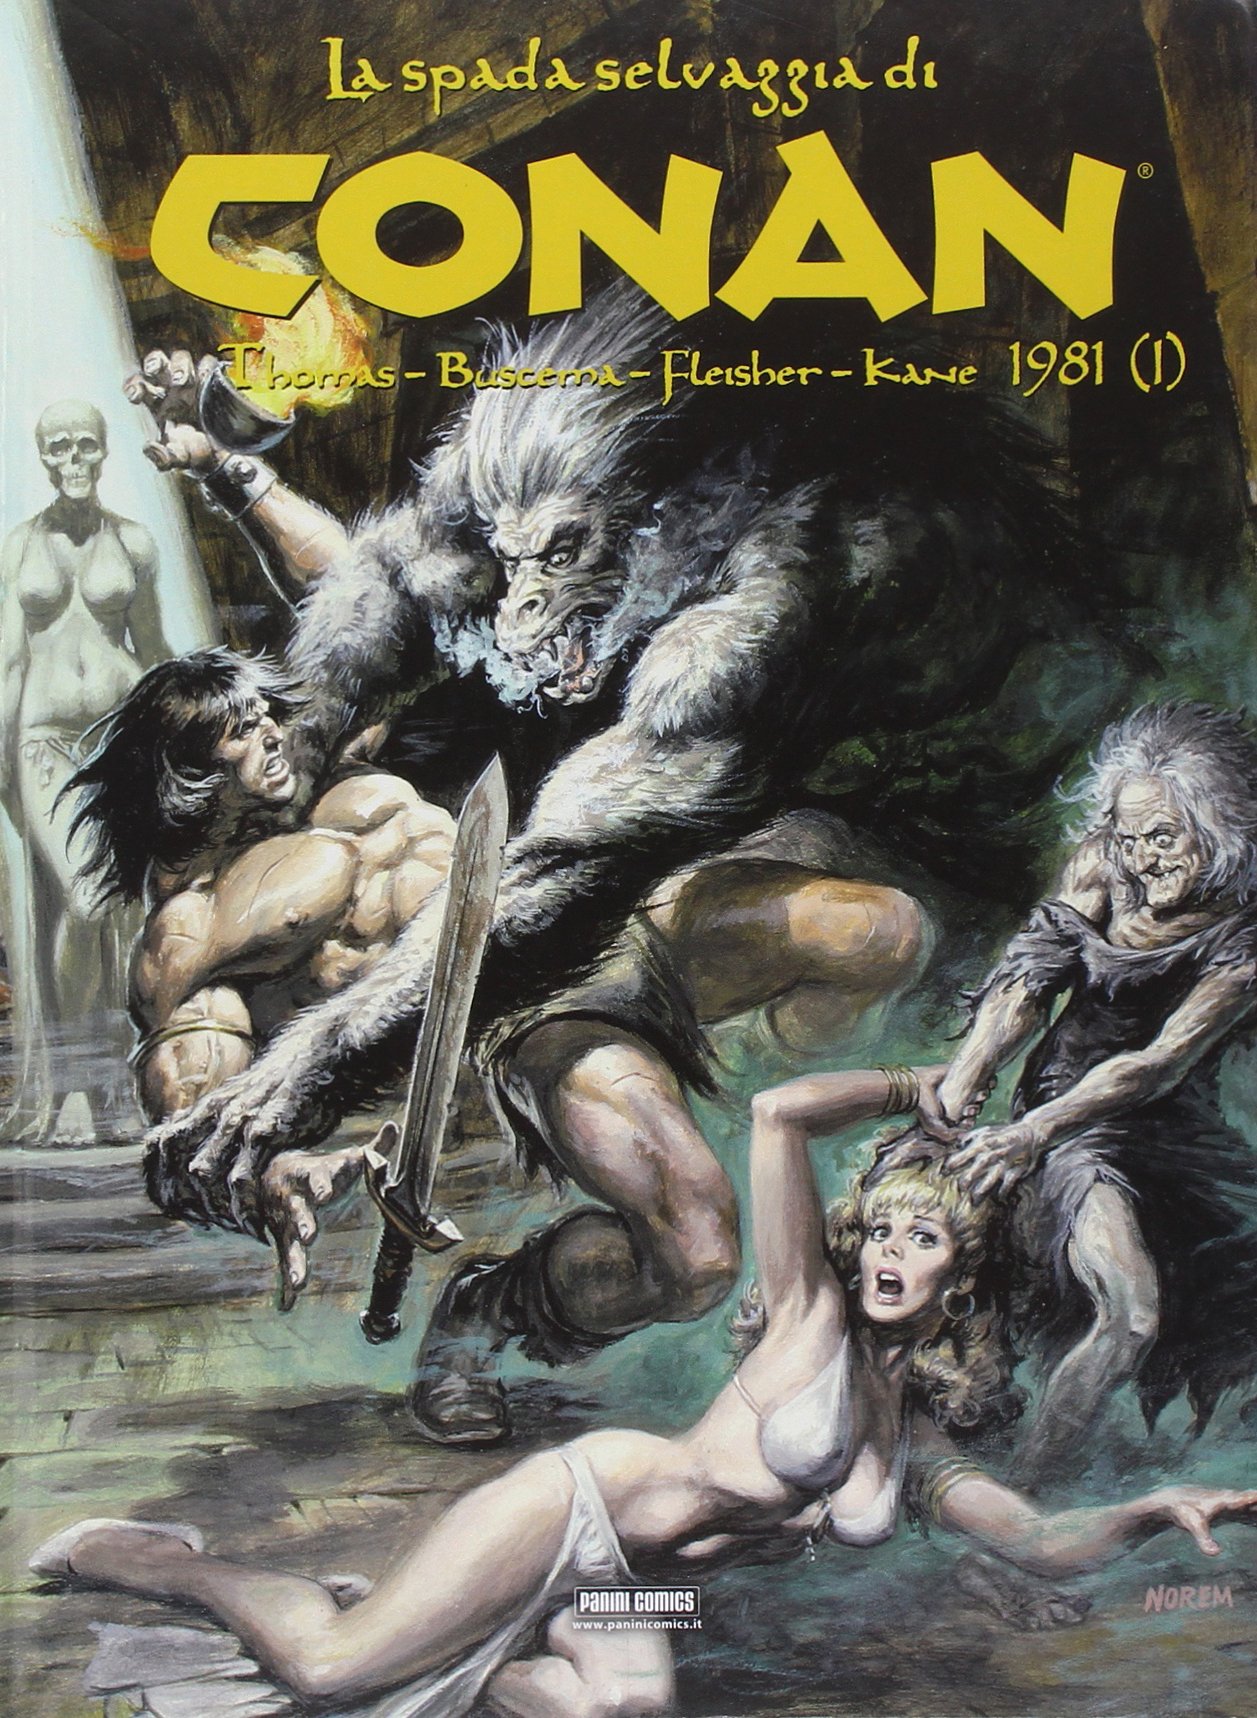 La spada selvaggia di Conan: 1981 (I)